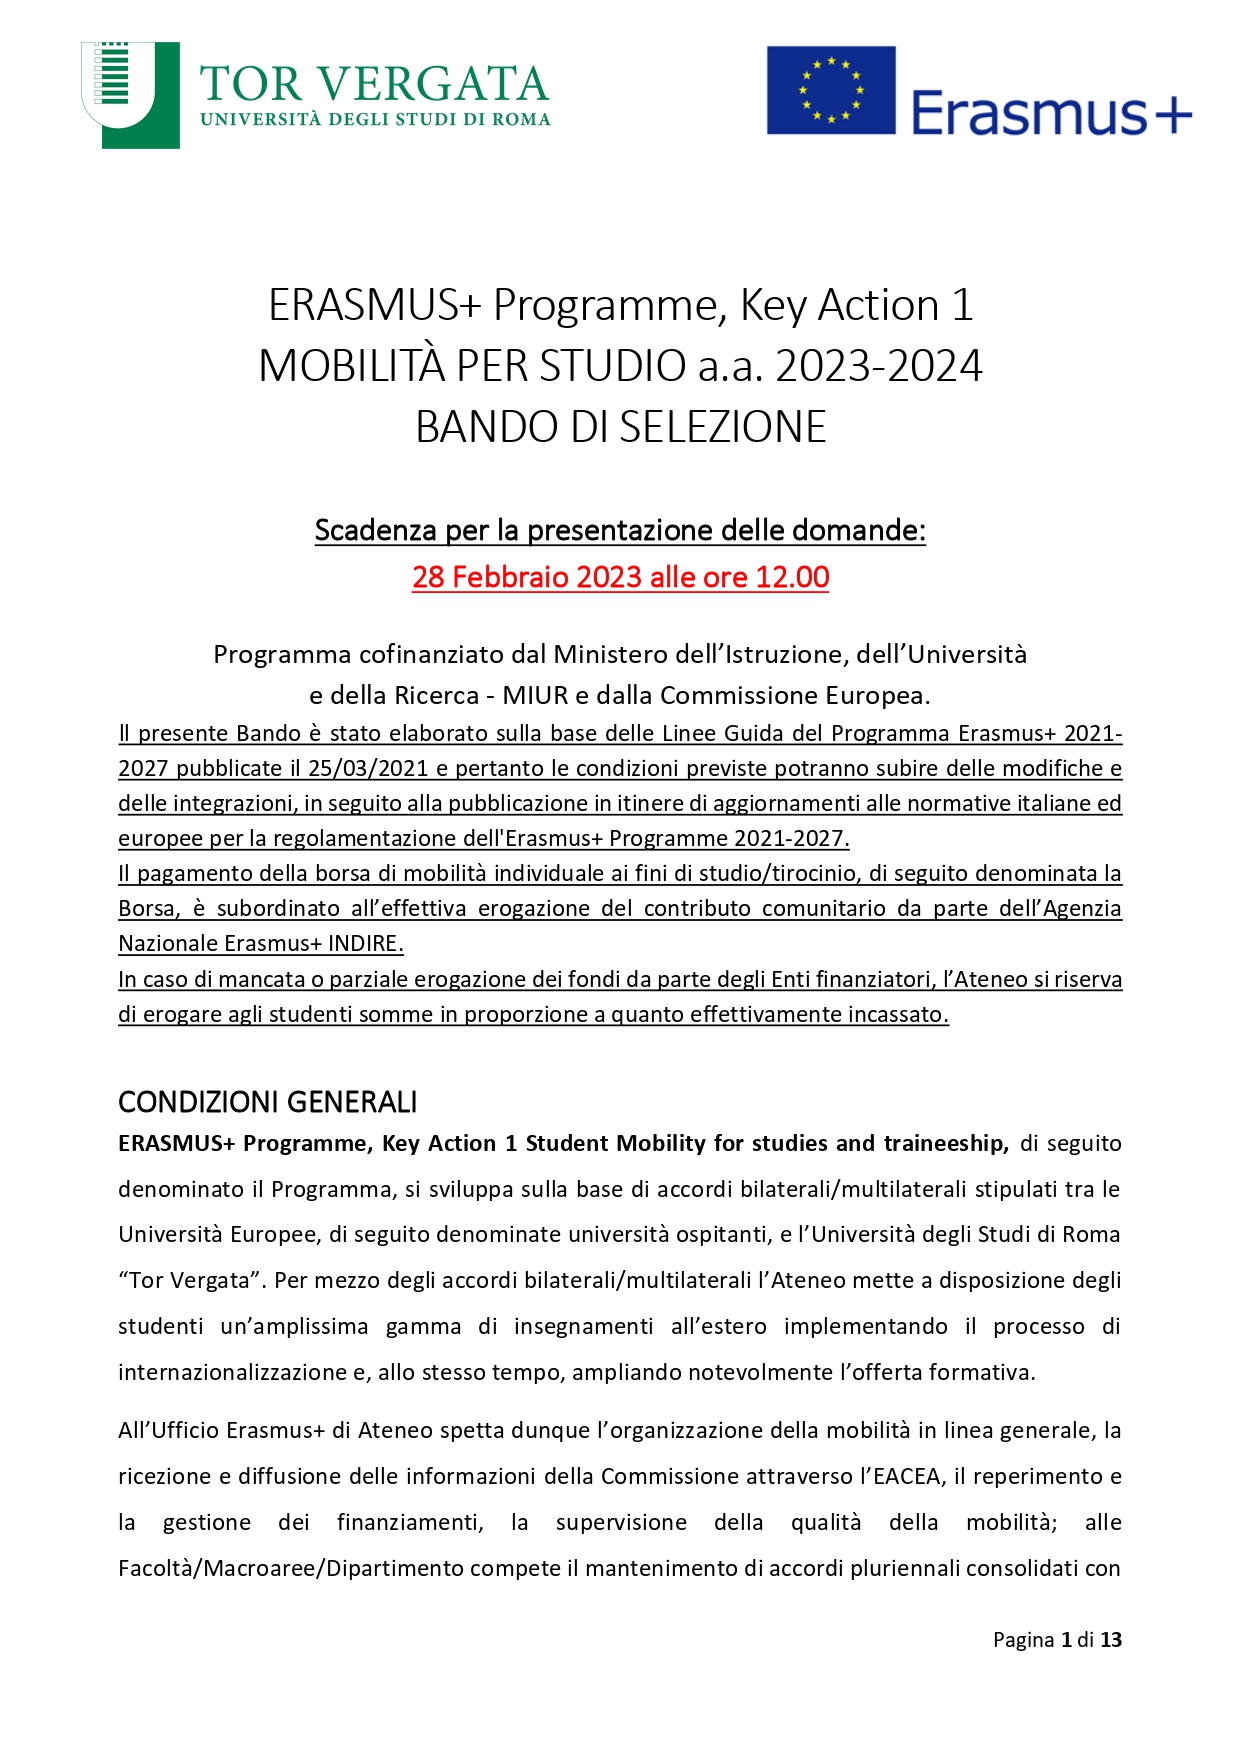 Bando Erasmus a.a. 2023/2024